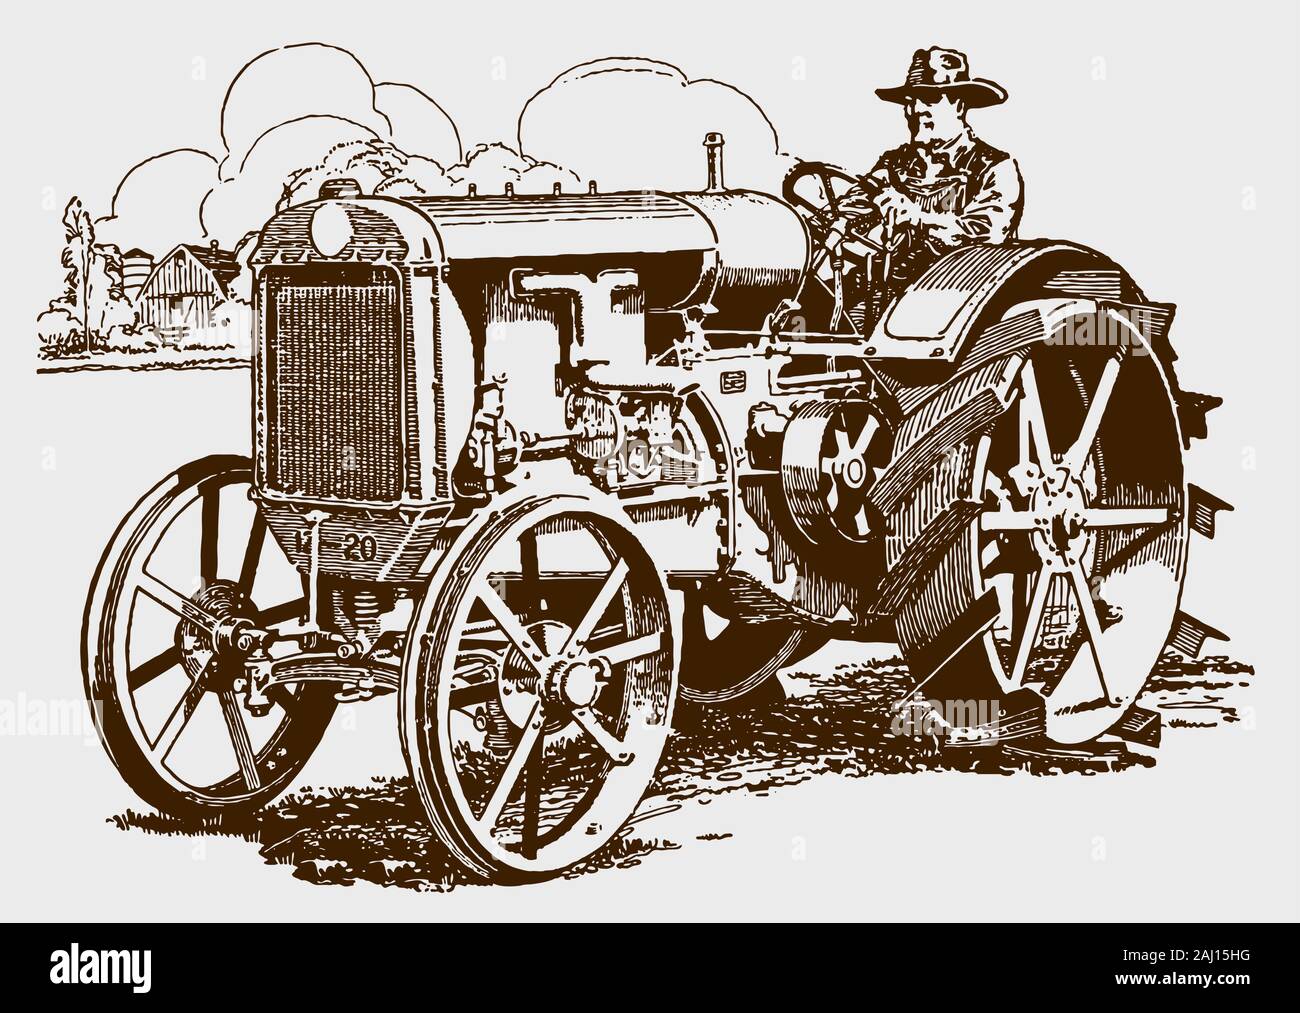 Landwirt mit einem historischen Traktor in einem Bereich, in drei Viertel der Vorderansicht. Abbildung: Nach einem Stich aus dem frühen 20. Jahrhundert Stock Vektor